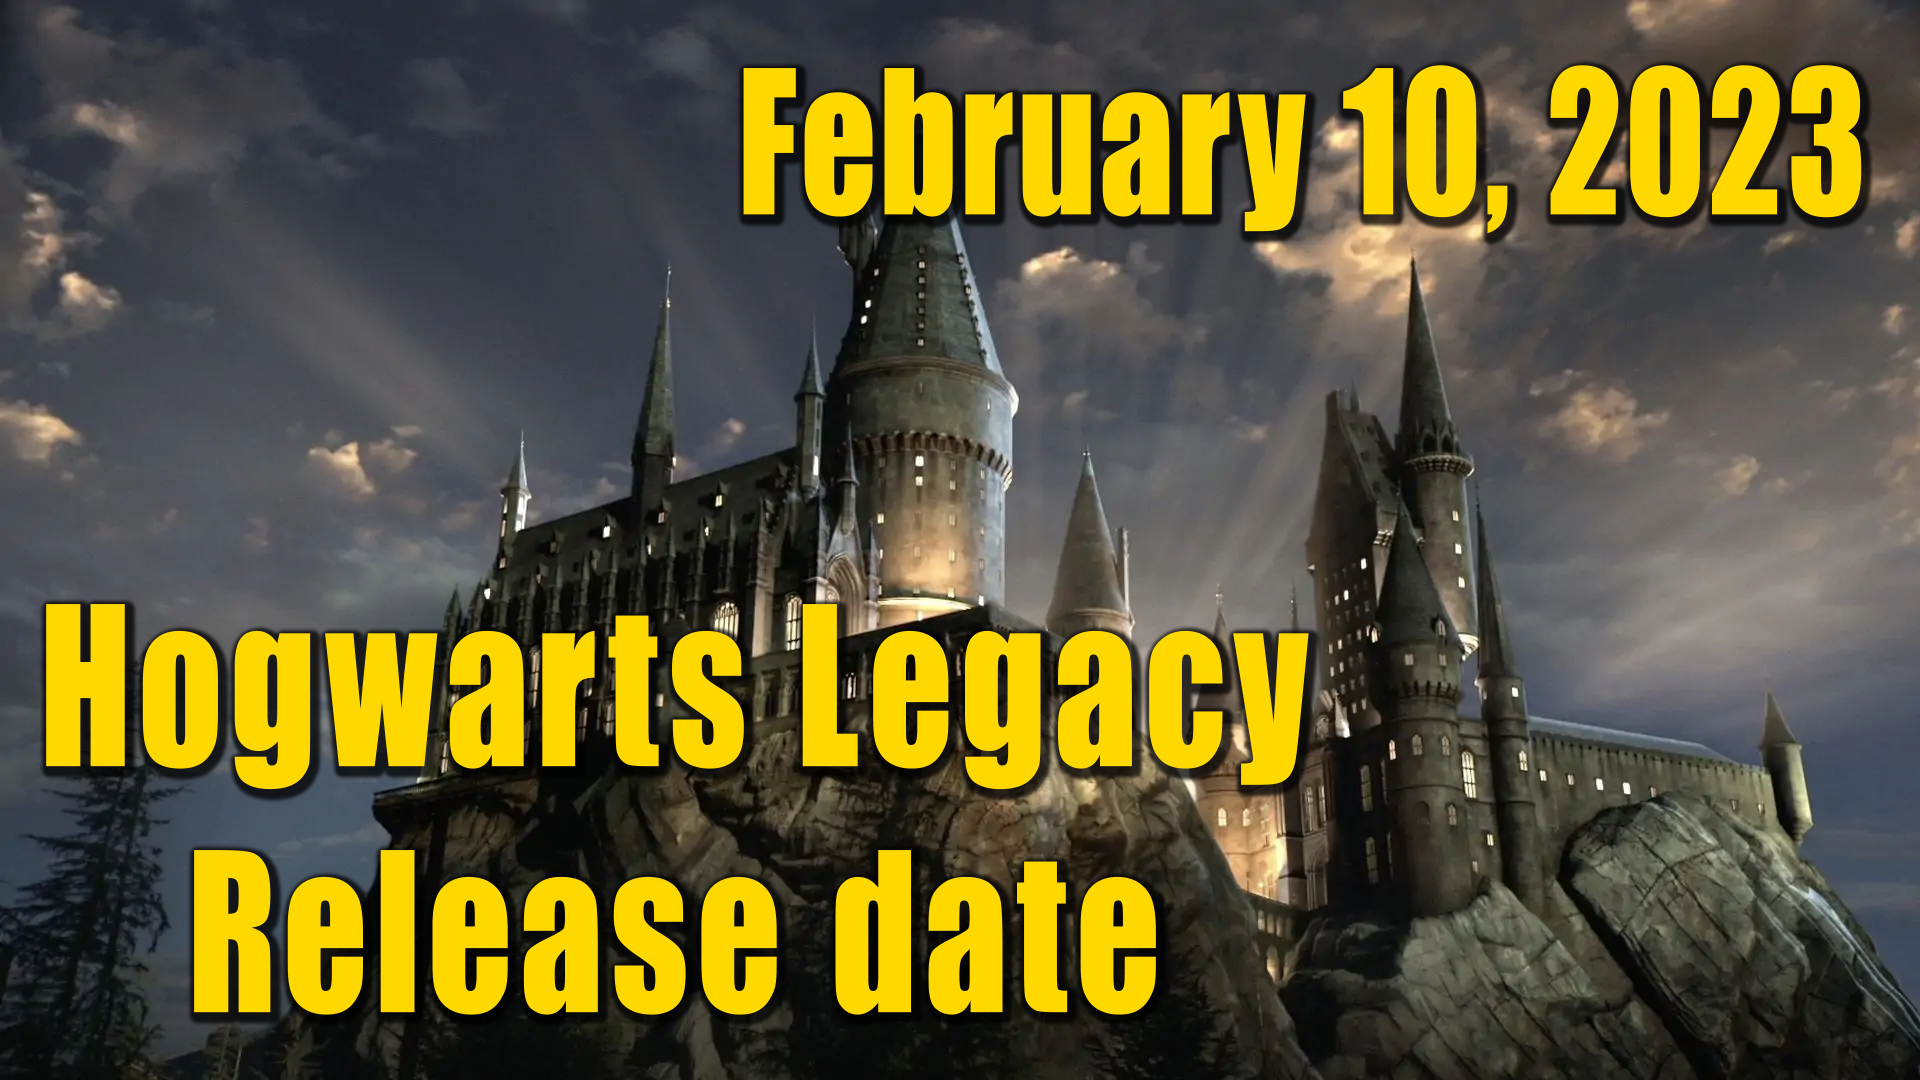 Hogwarts Legacy Release date- February 10, 2023